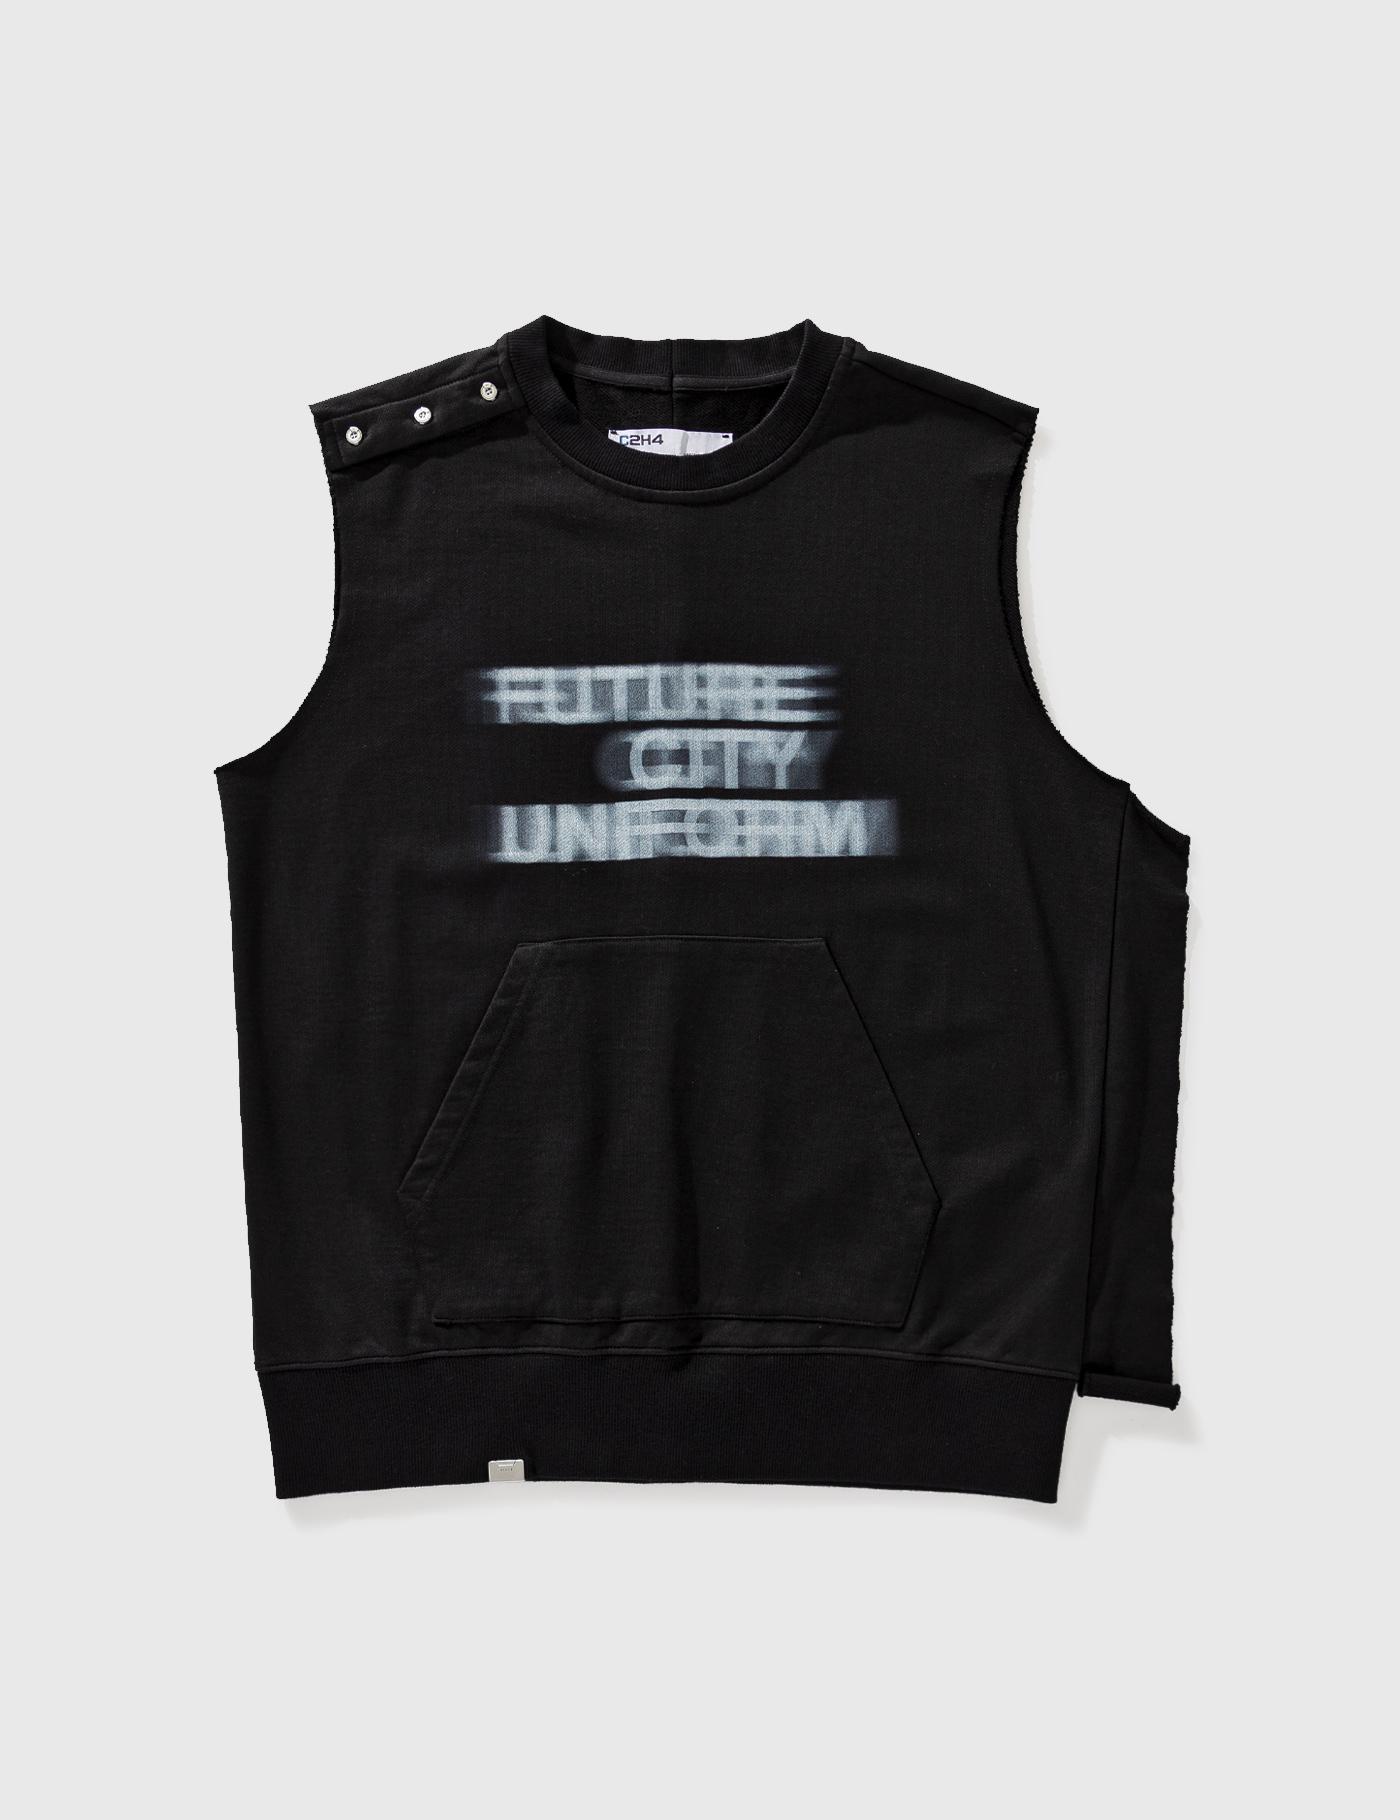 Blurred Future City Uniform Vest by C2H4